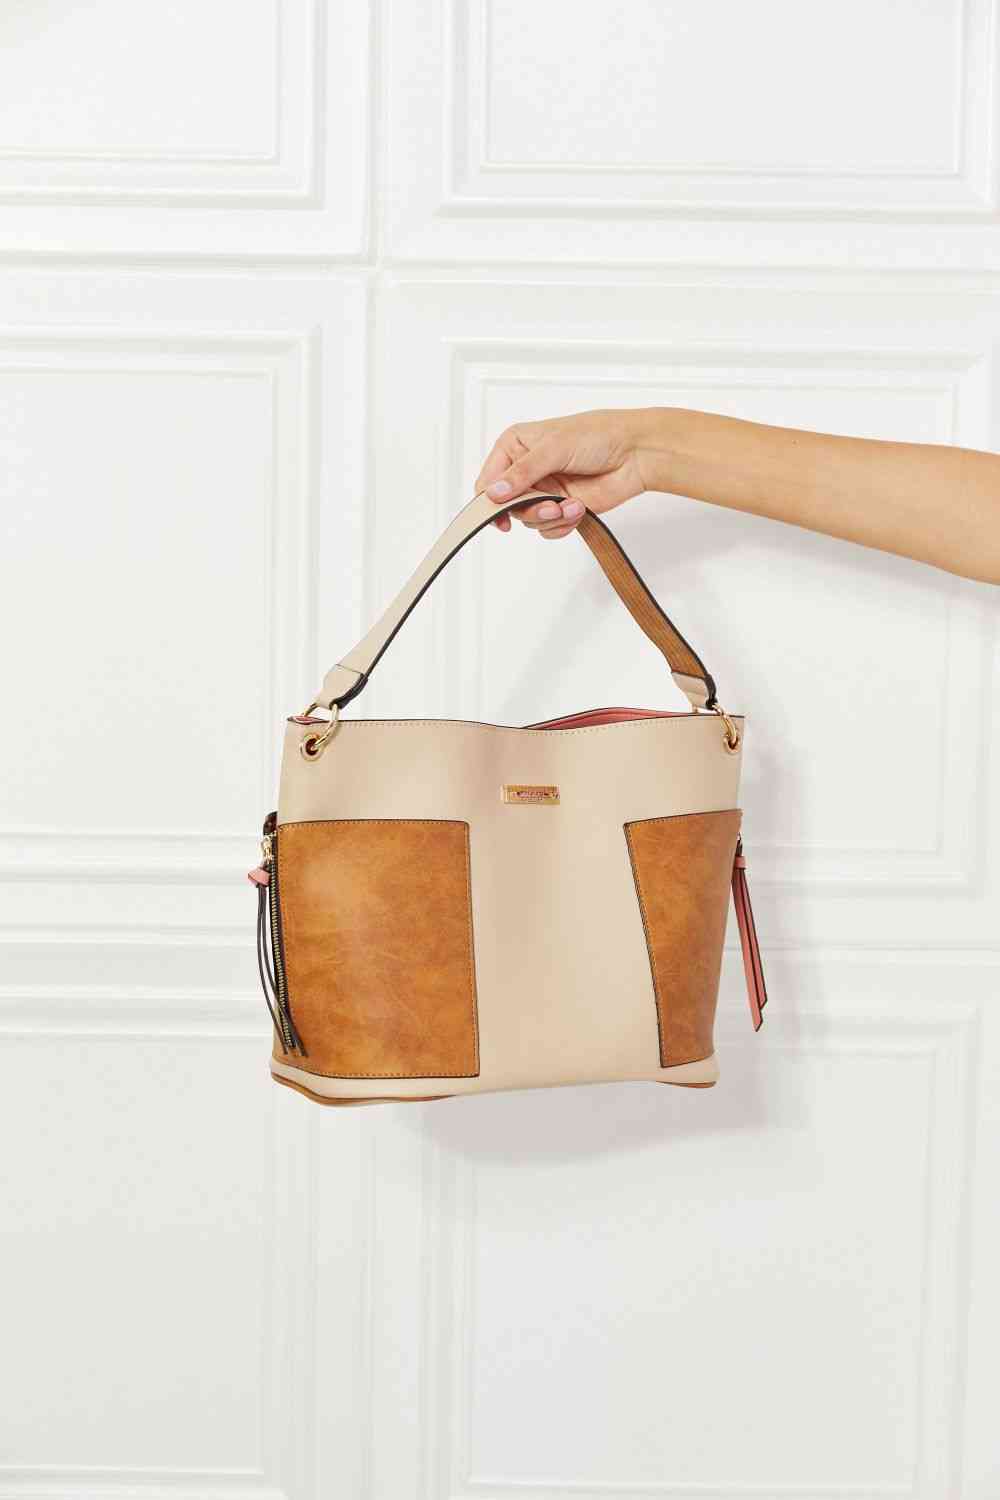 womenbags, women bag sale, women bag leather, michael kors women bag, lacoste women bag, women bag brand, dior women bag